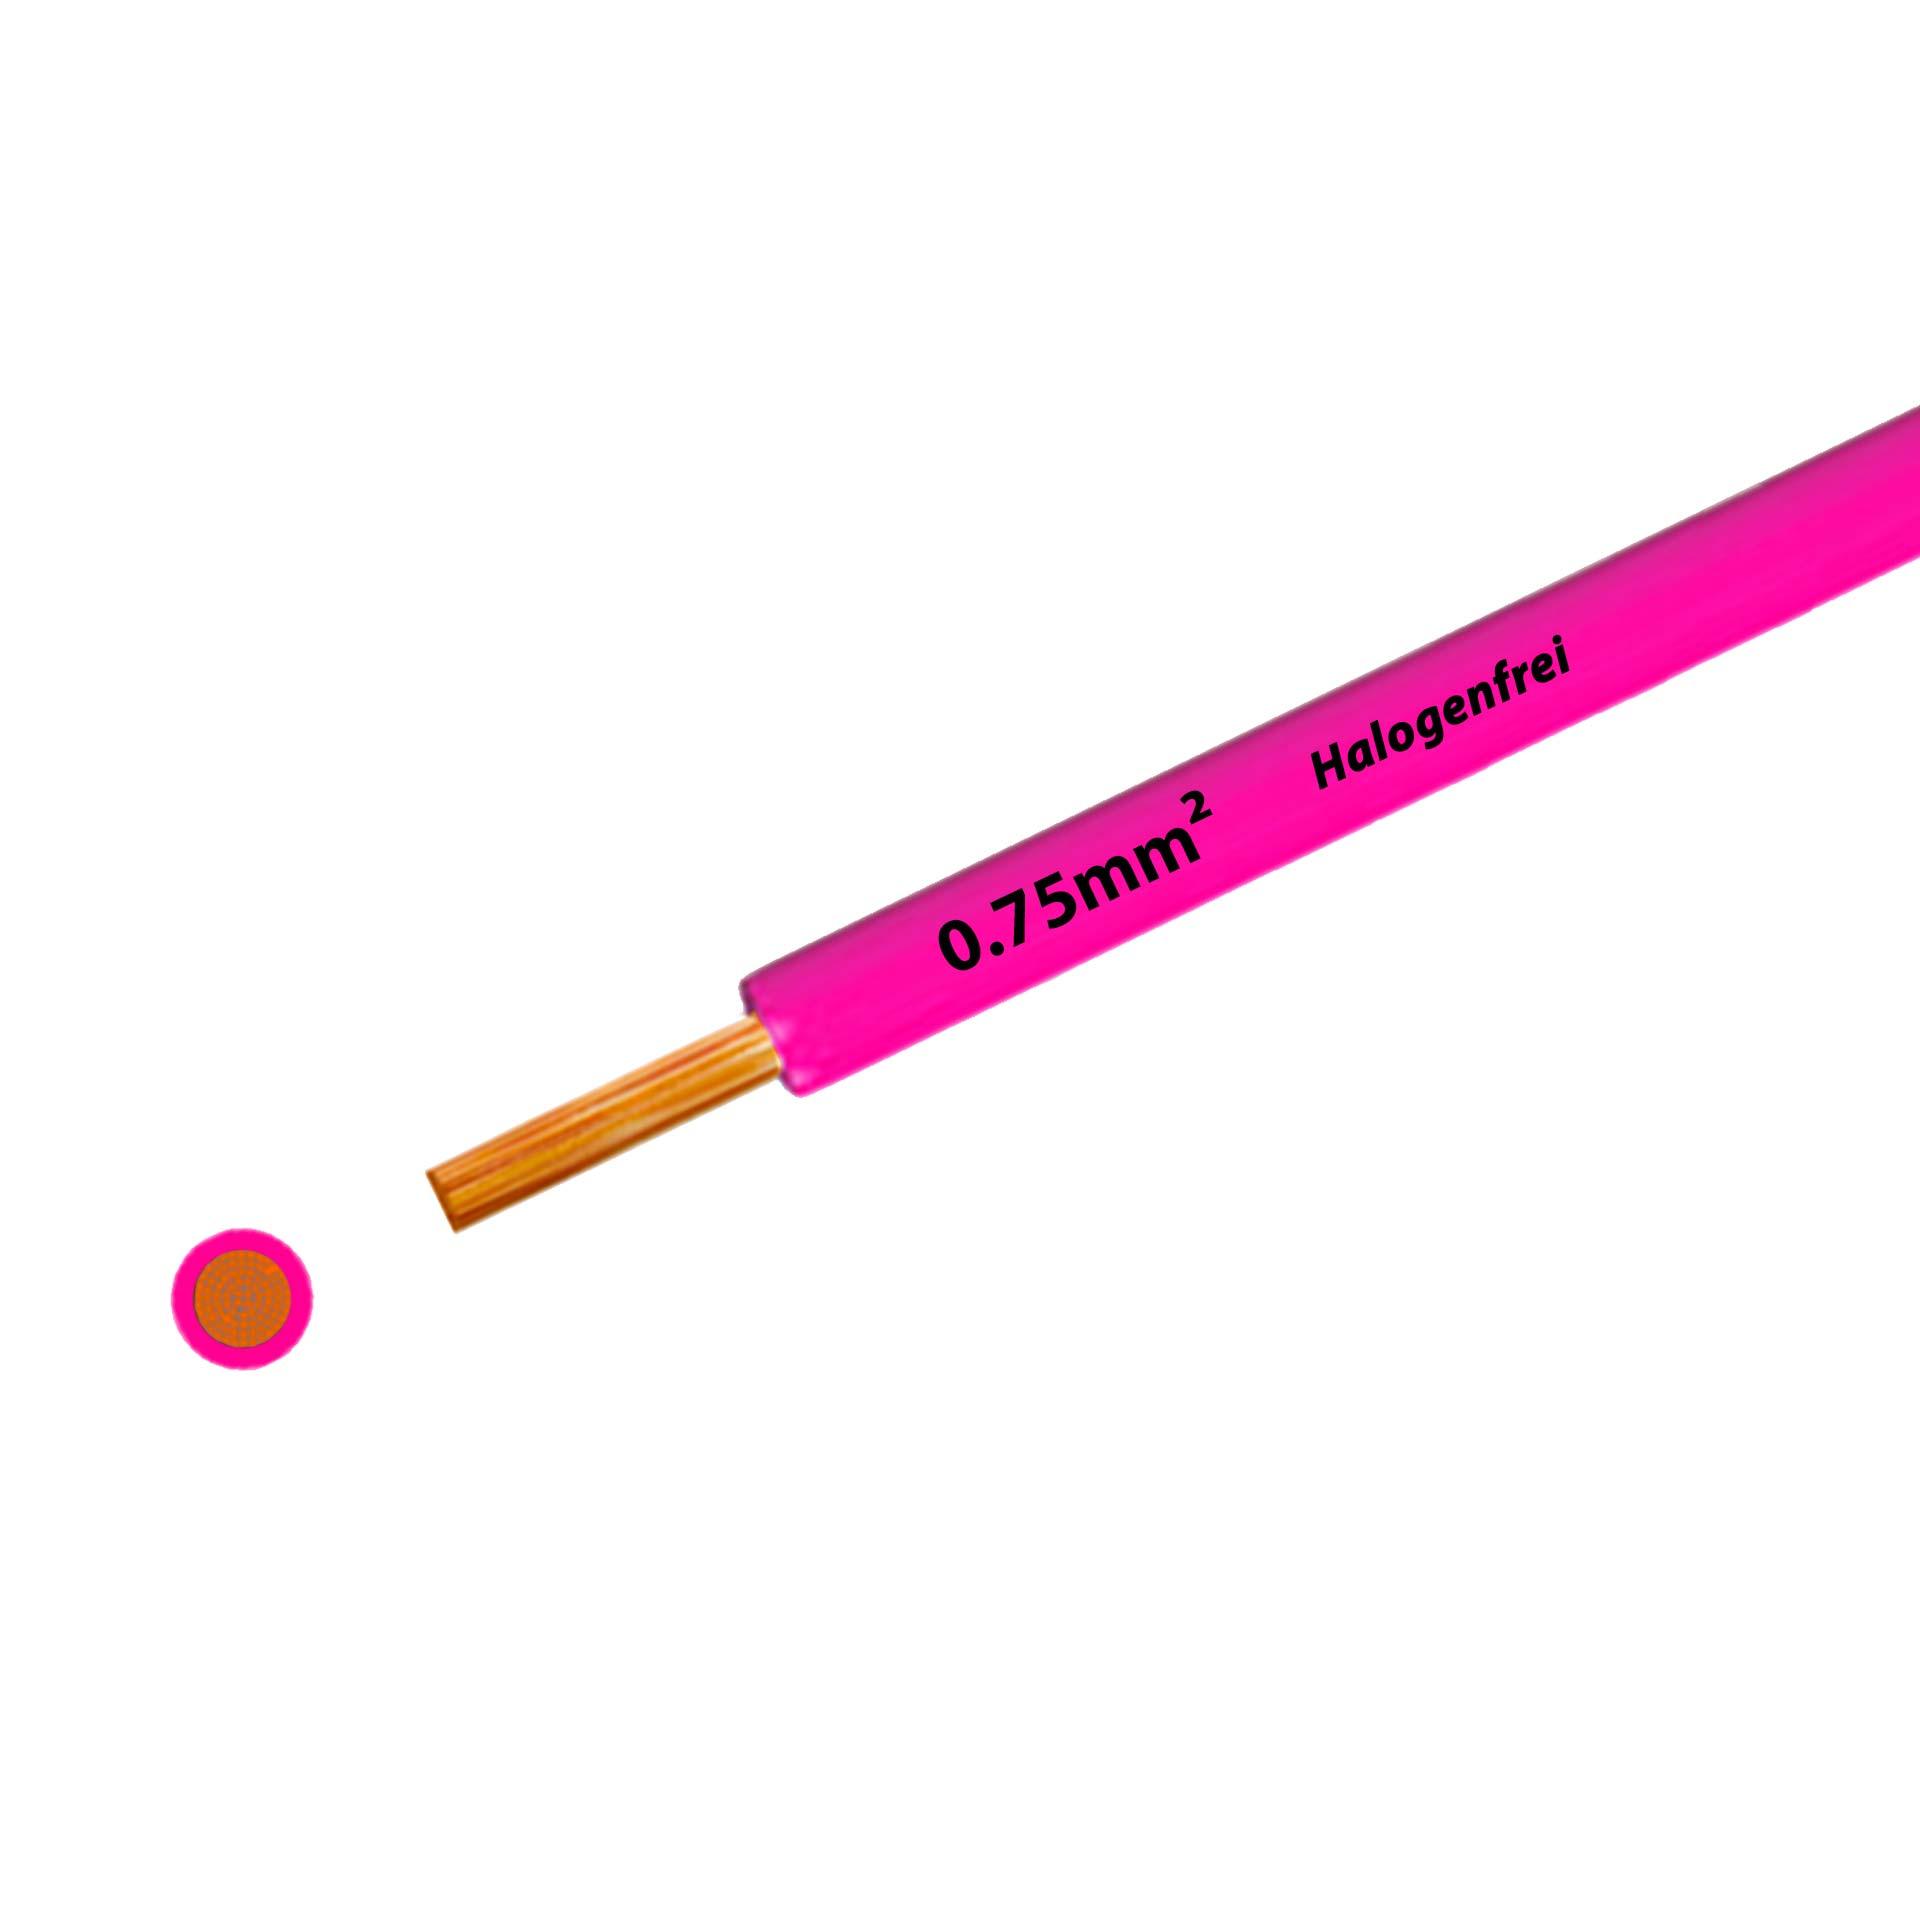 Litze halogenfrei 90° C , 500V, 0.75 mm2, pink/rosa (RAL 3015), auf Kunststoffrolle